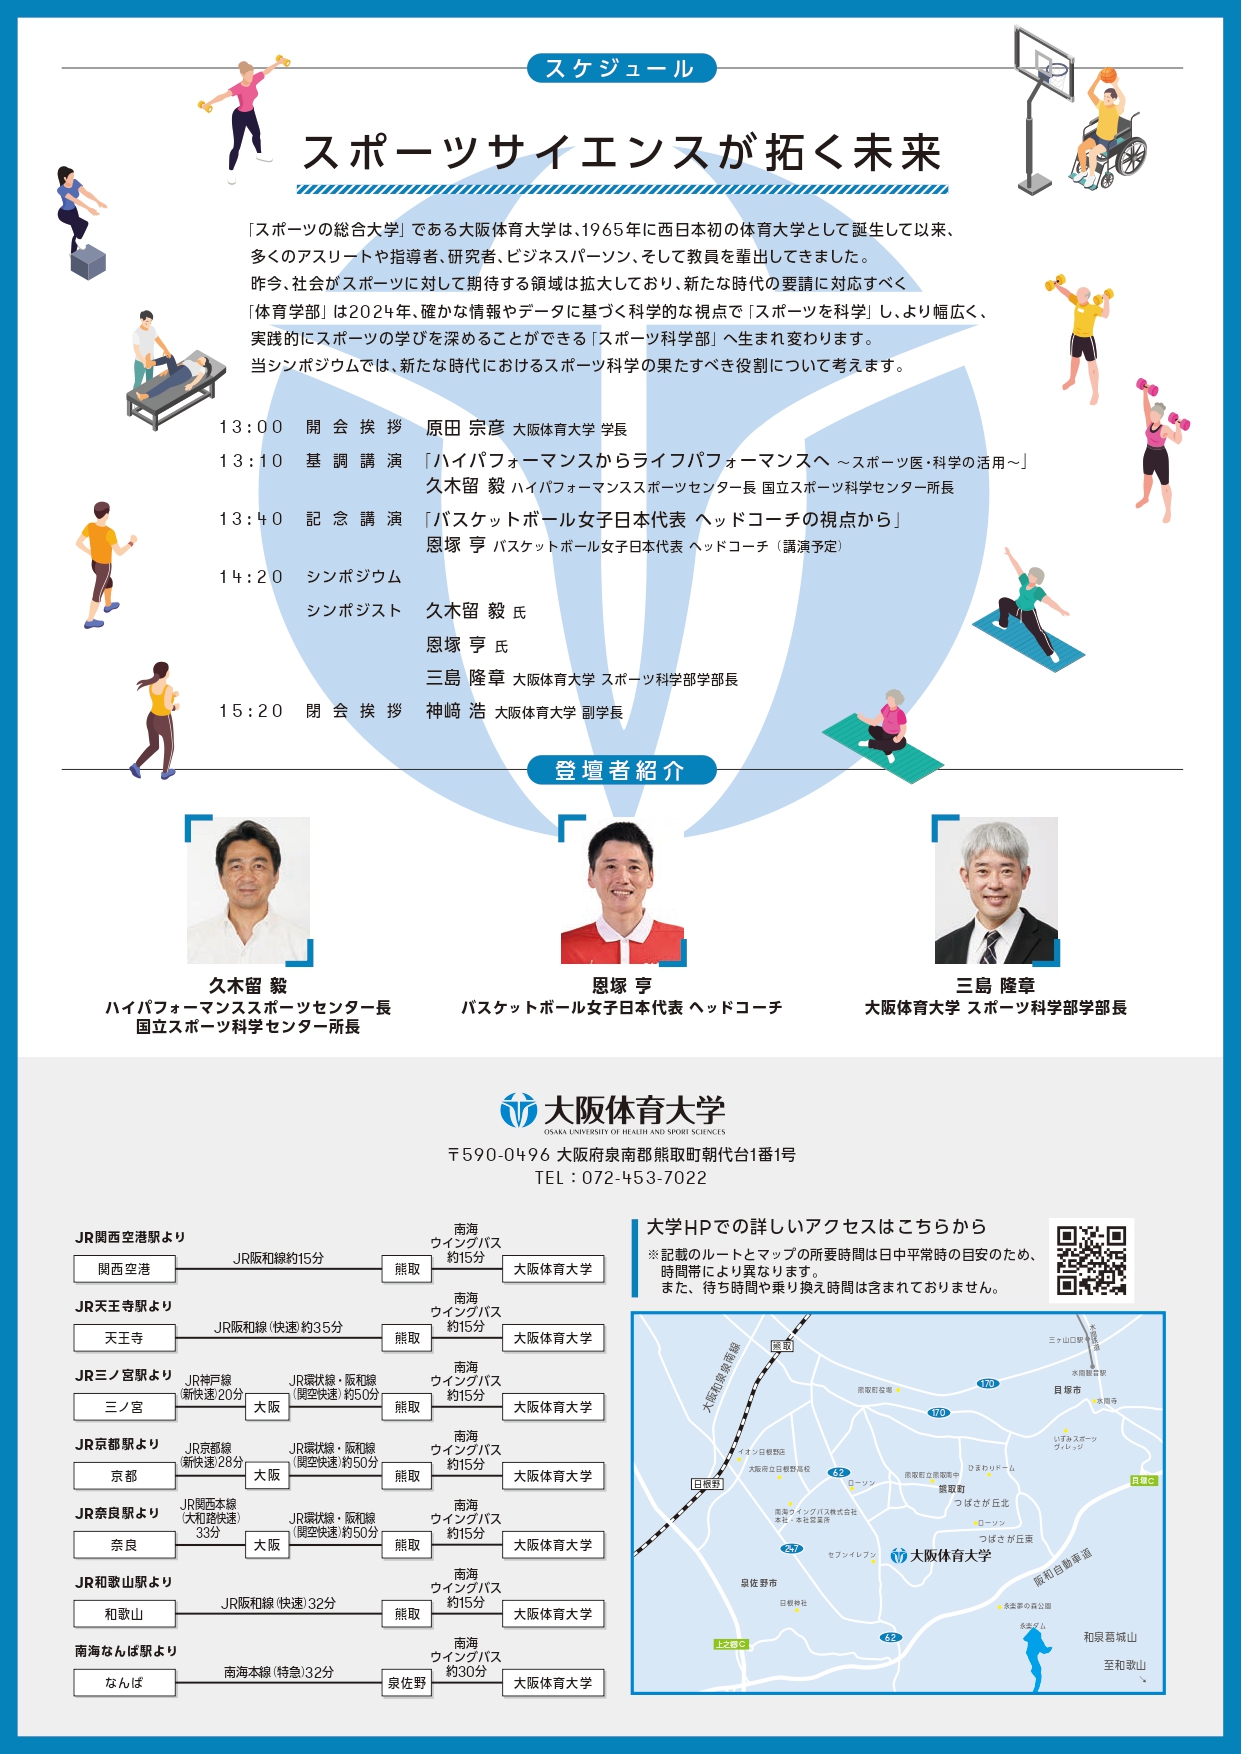 大阪体育大学スポーツ科学部開設記念シンポジウム「スポーツサイエンスが拓く未来」